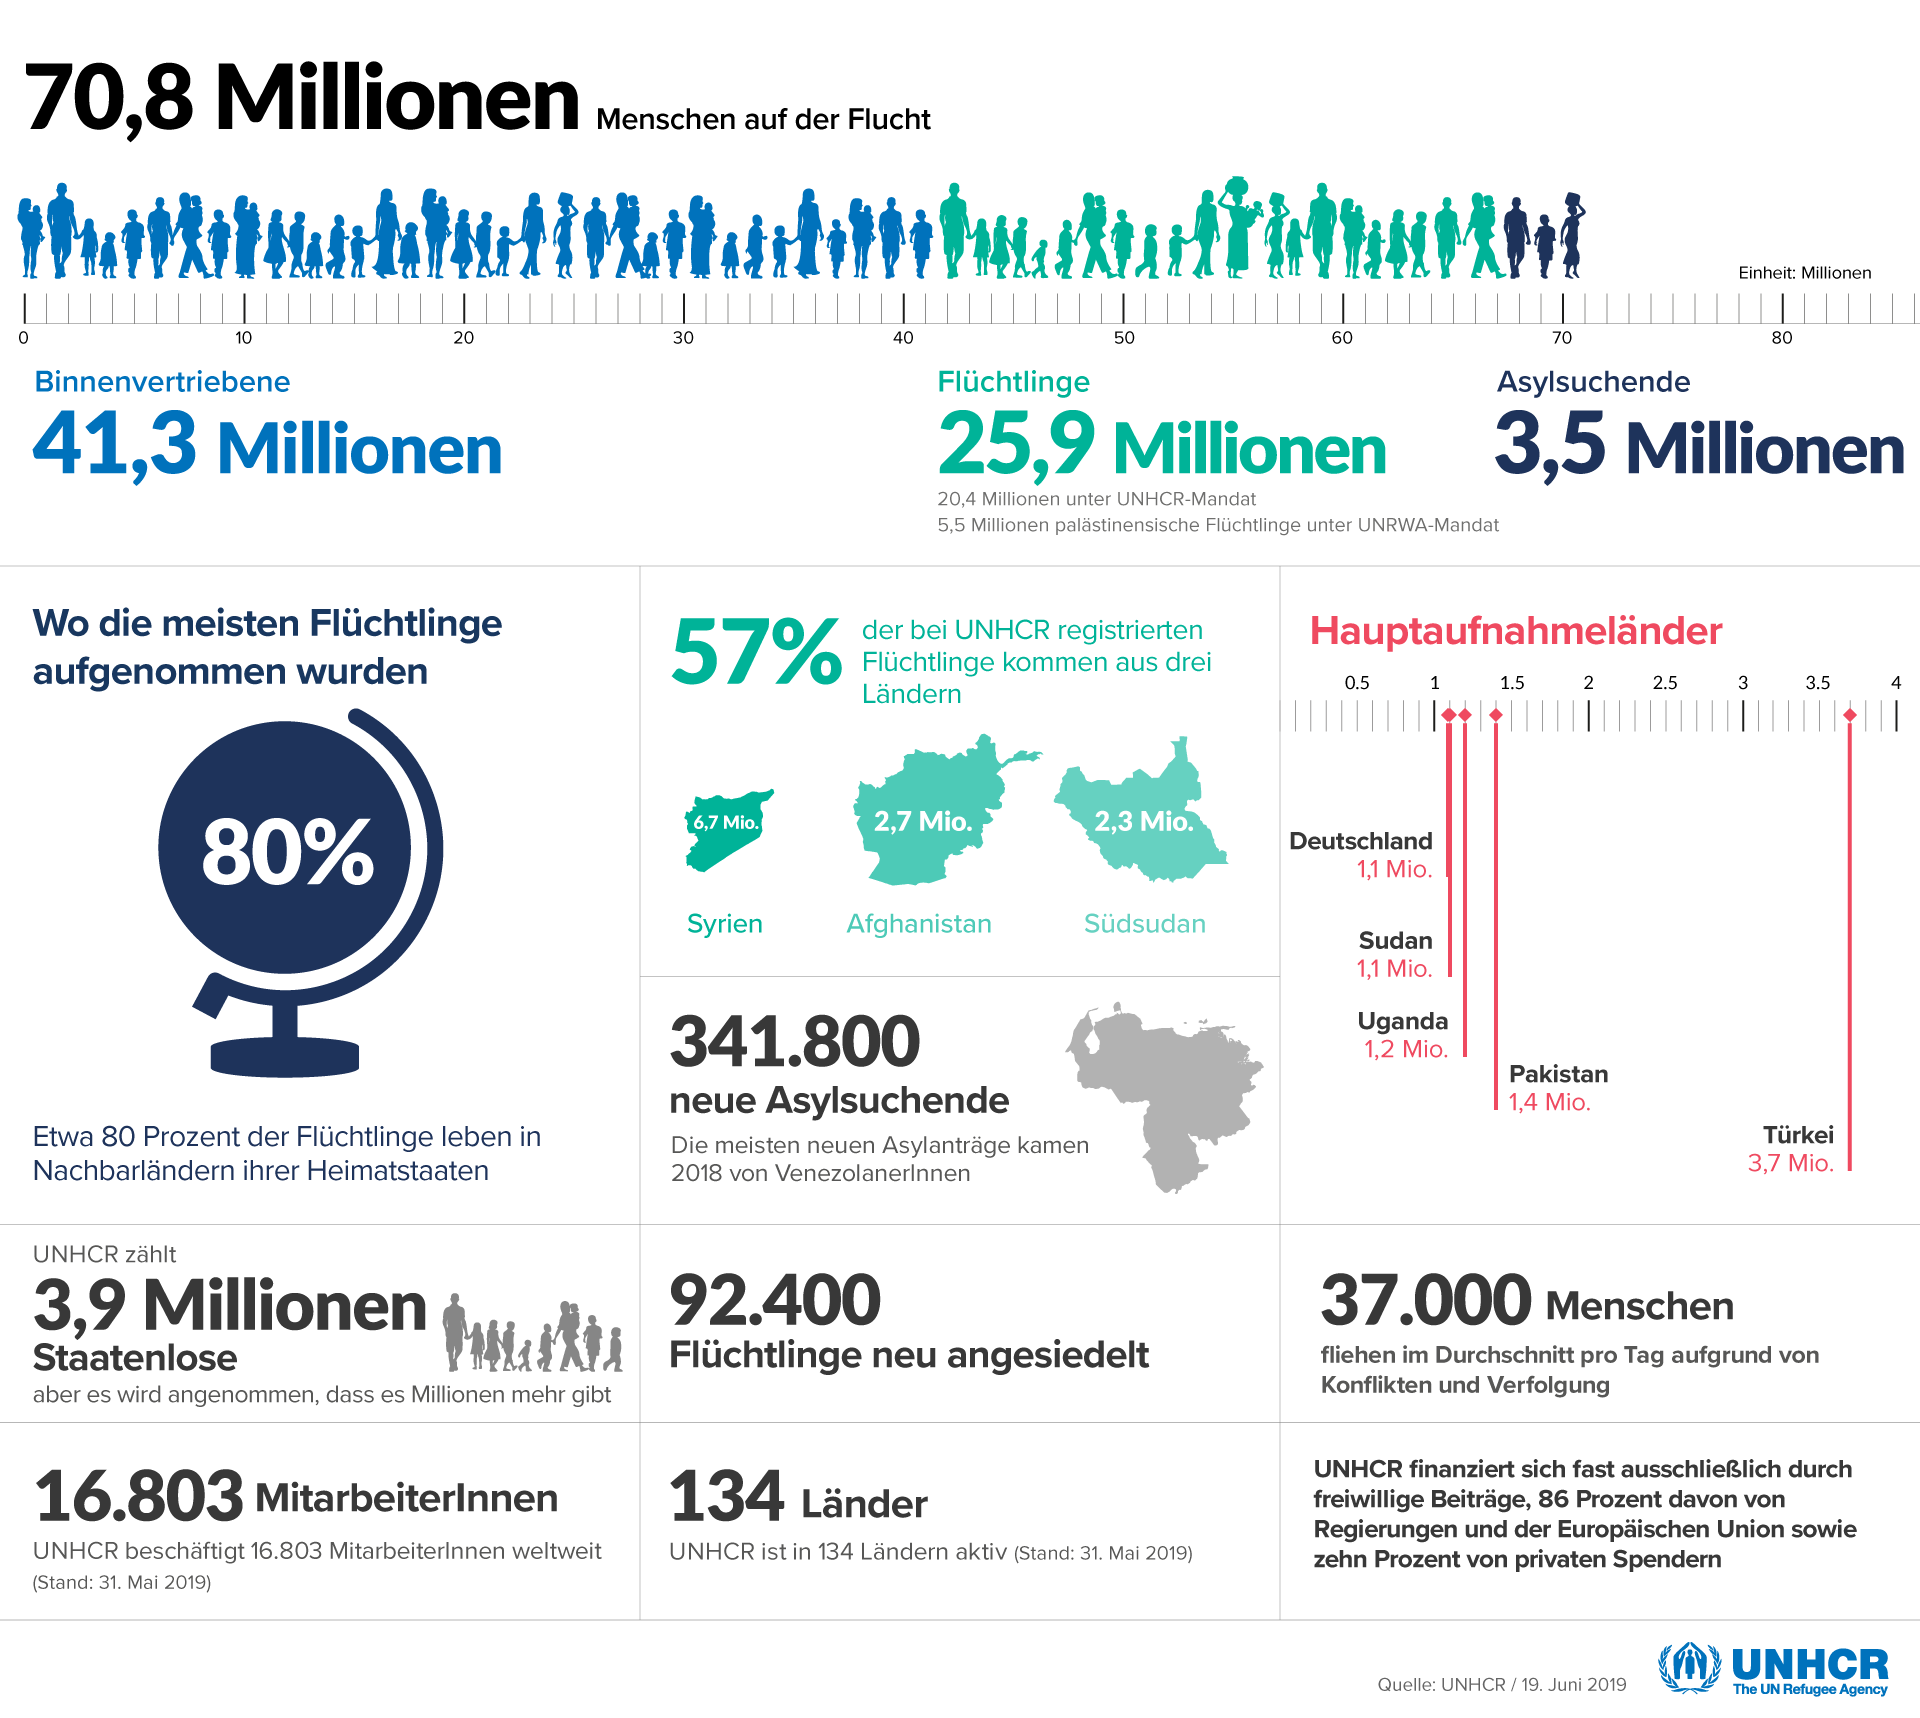 Bild: UNHCR - Statistik - Menschen auf der Flucht